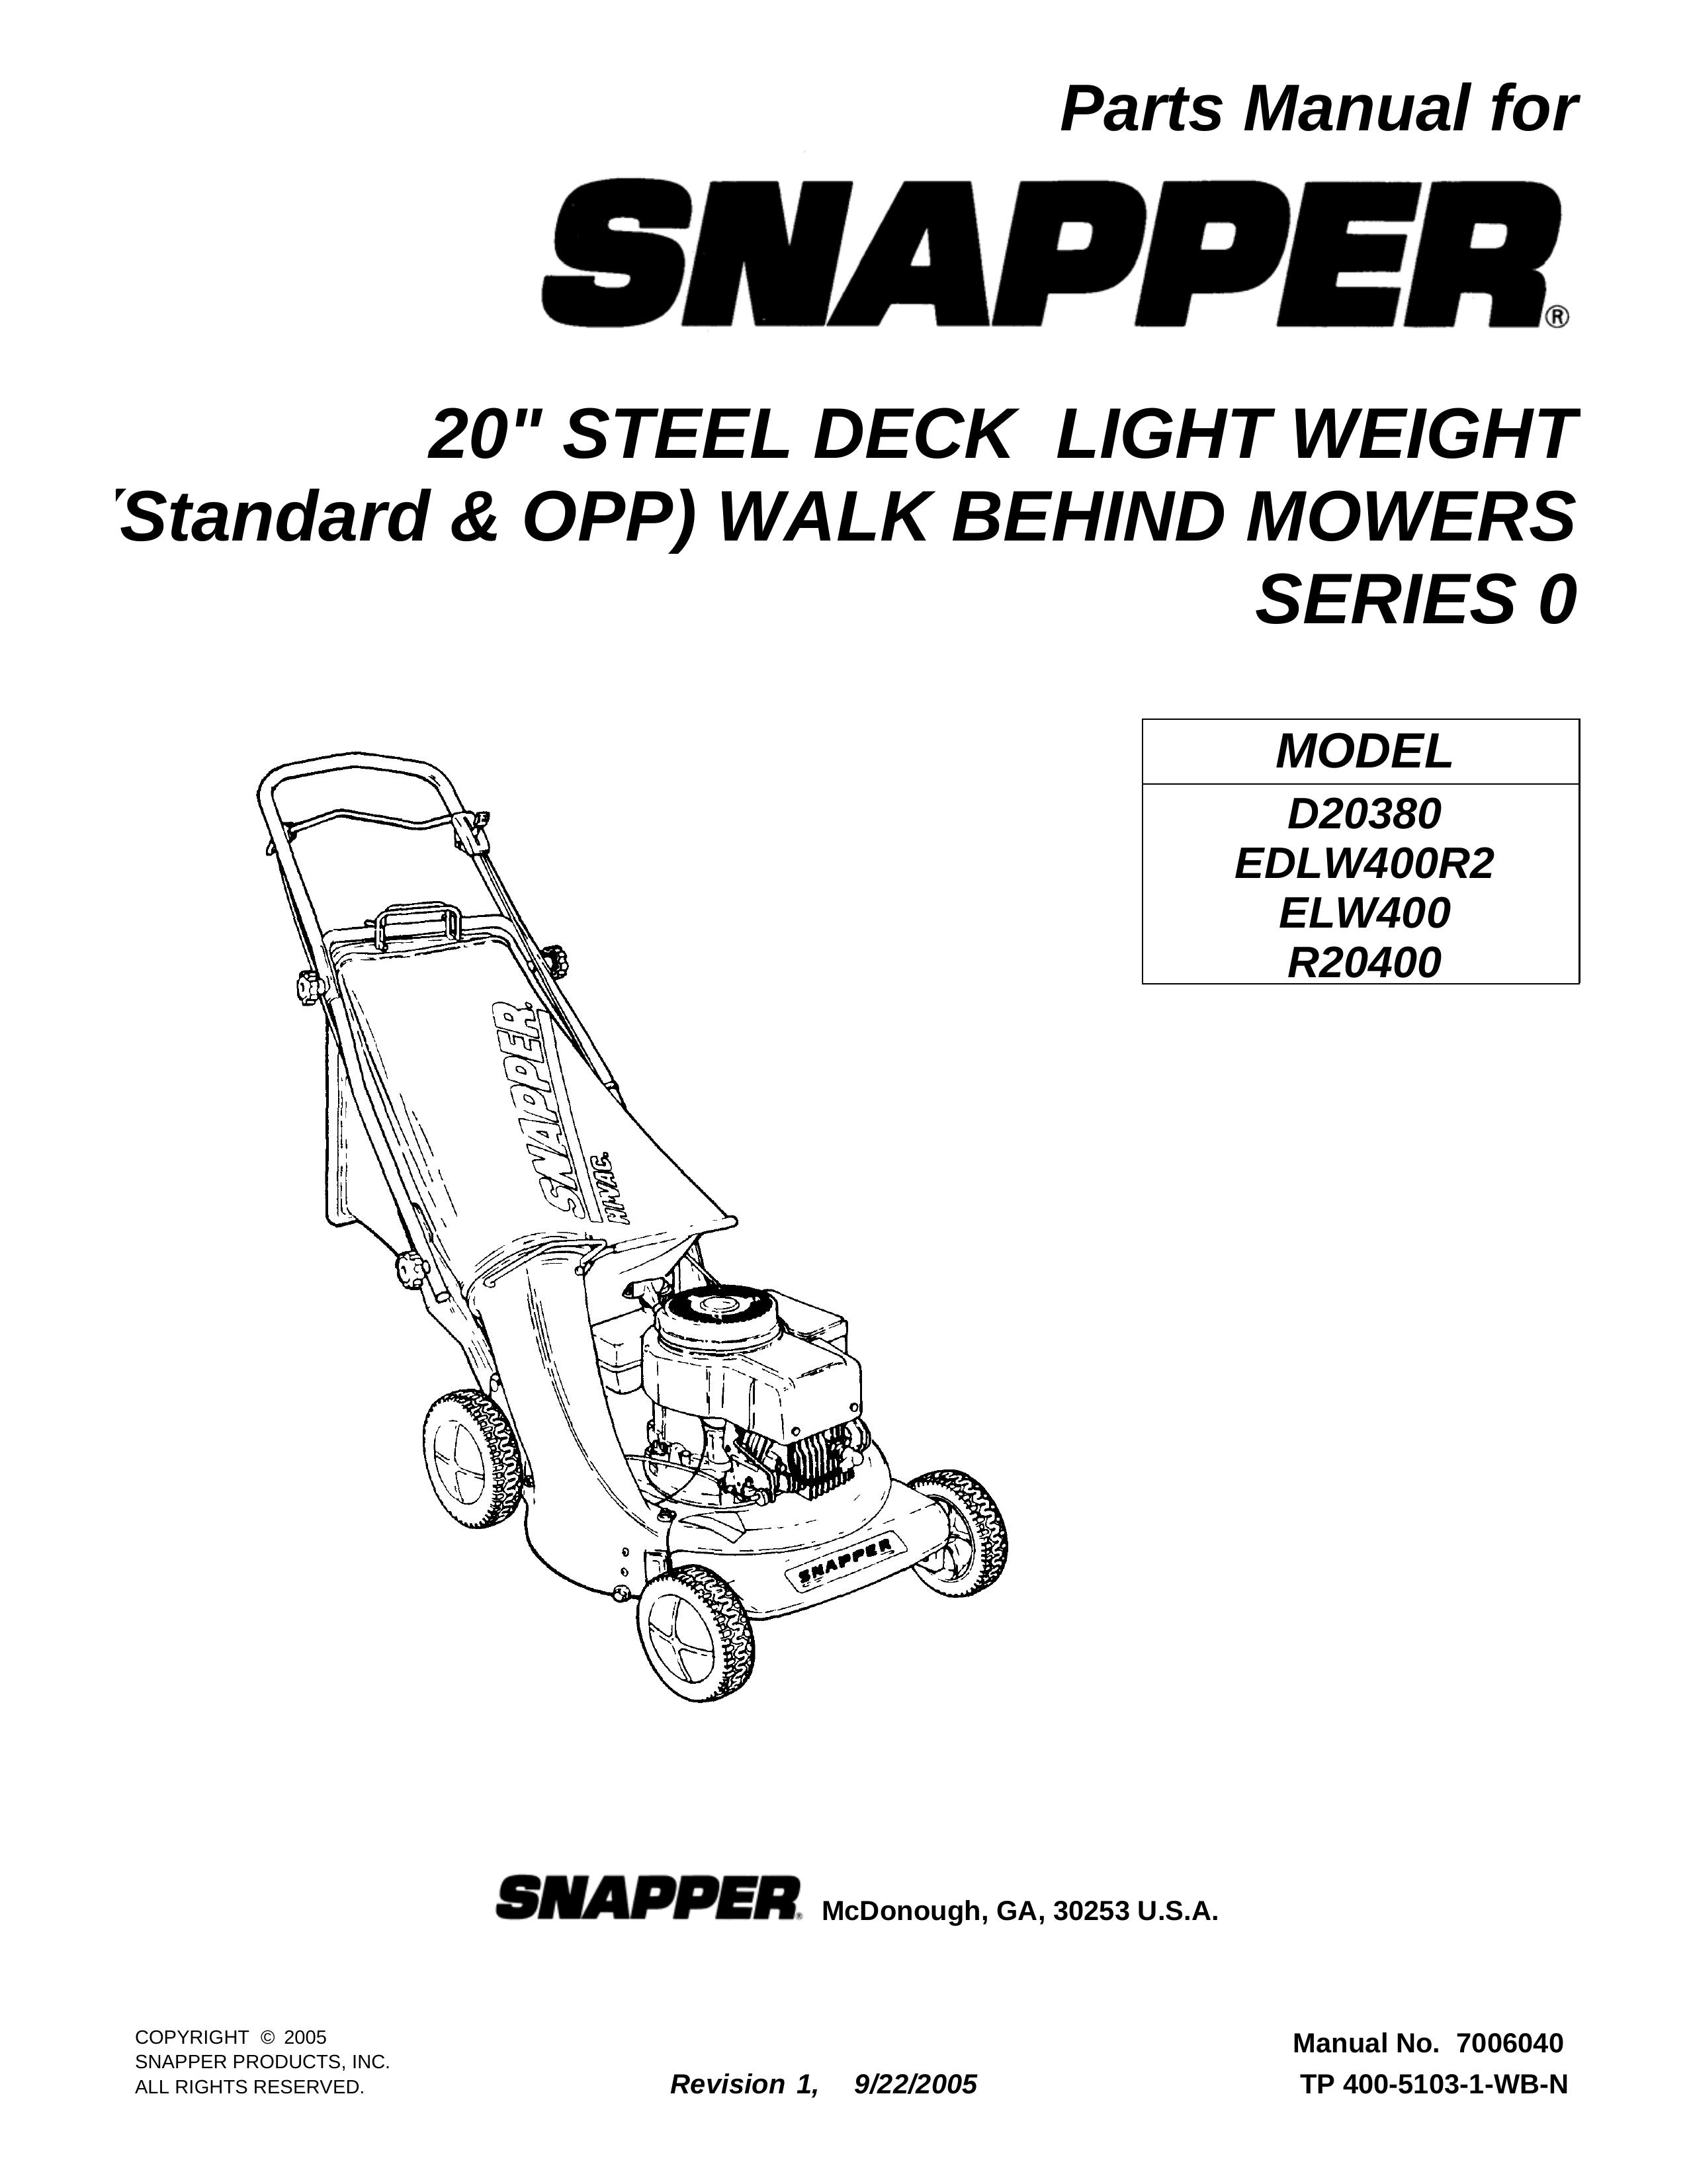 Snapper ELW400 Trimmer User Manual